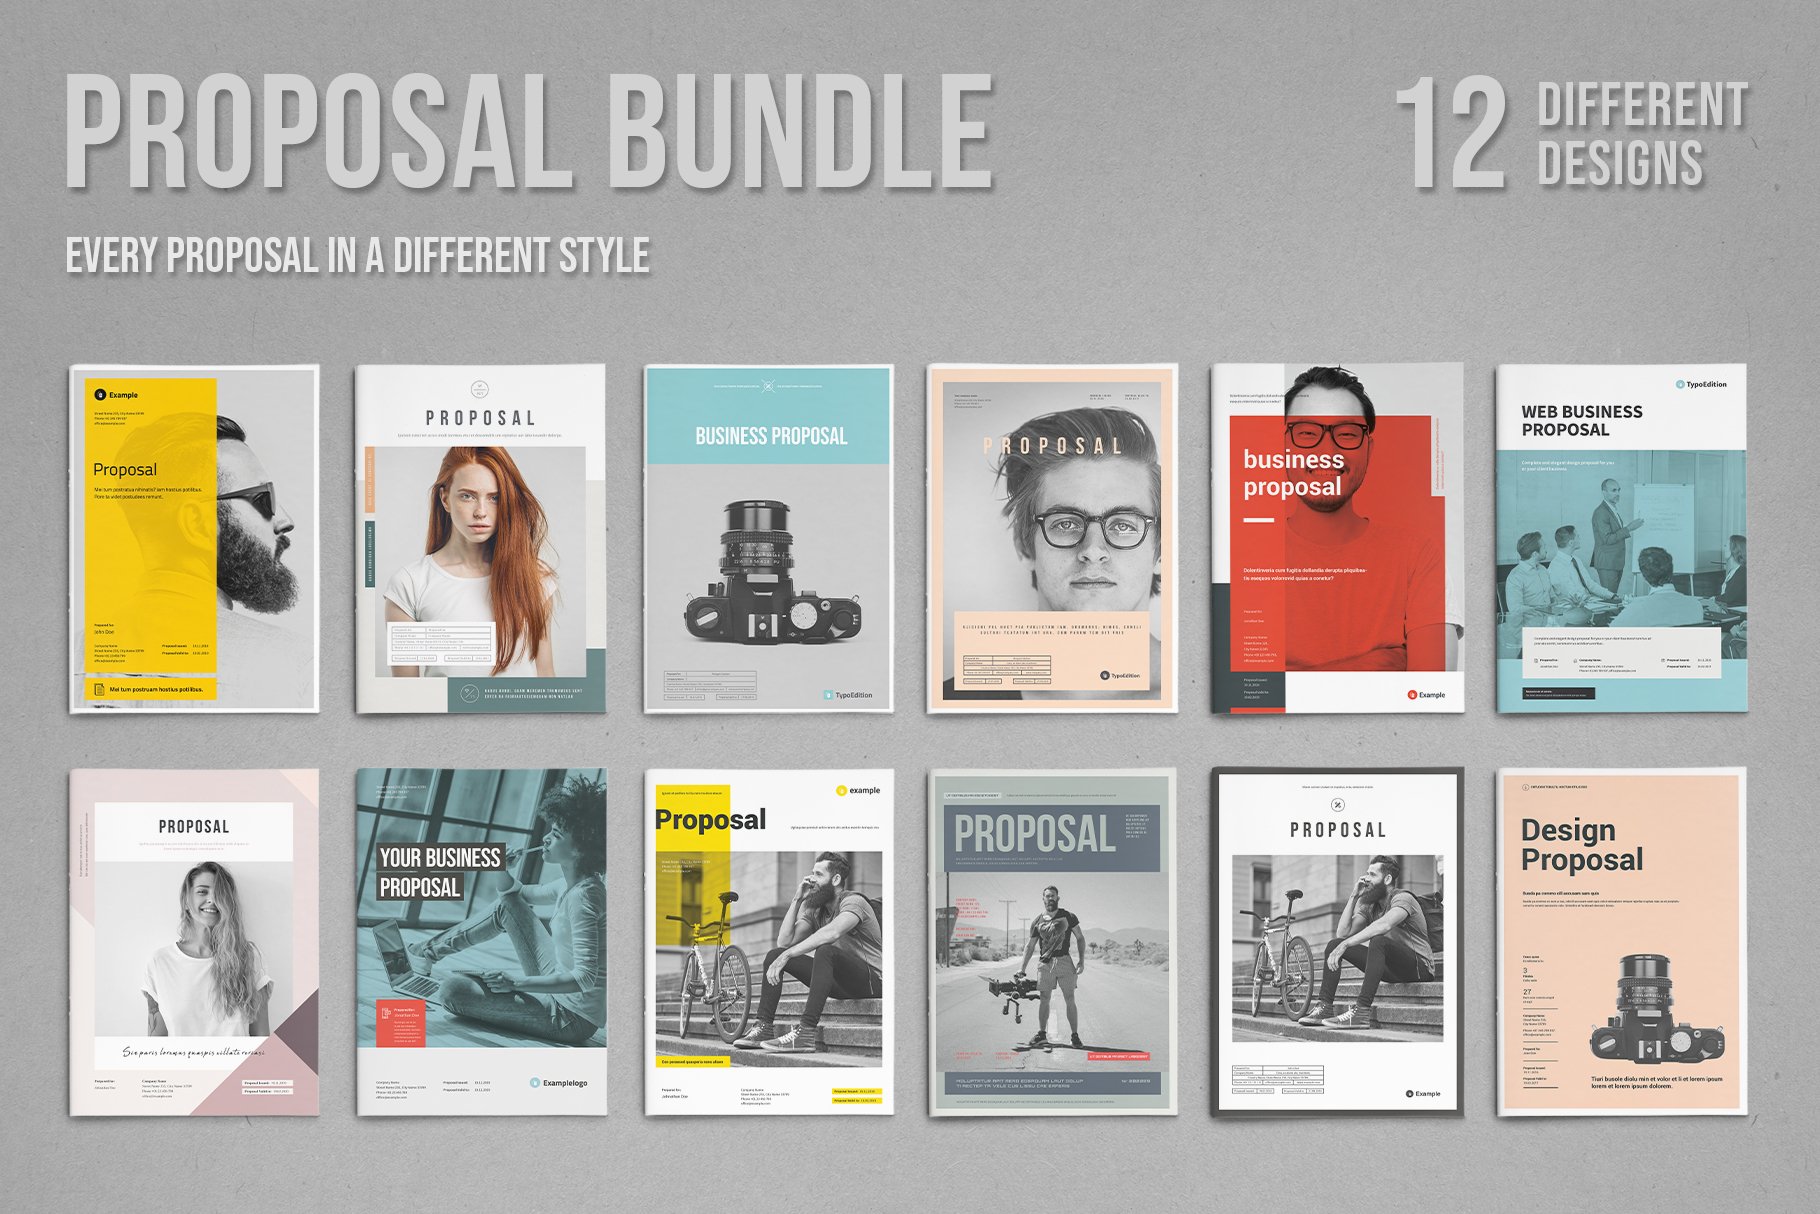 Proposal Bundle | 12 Items Vol. 2 cover image.